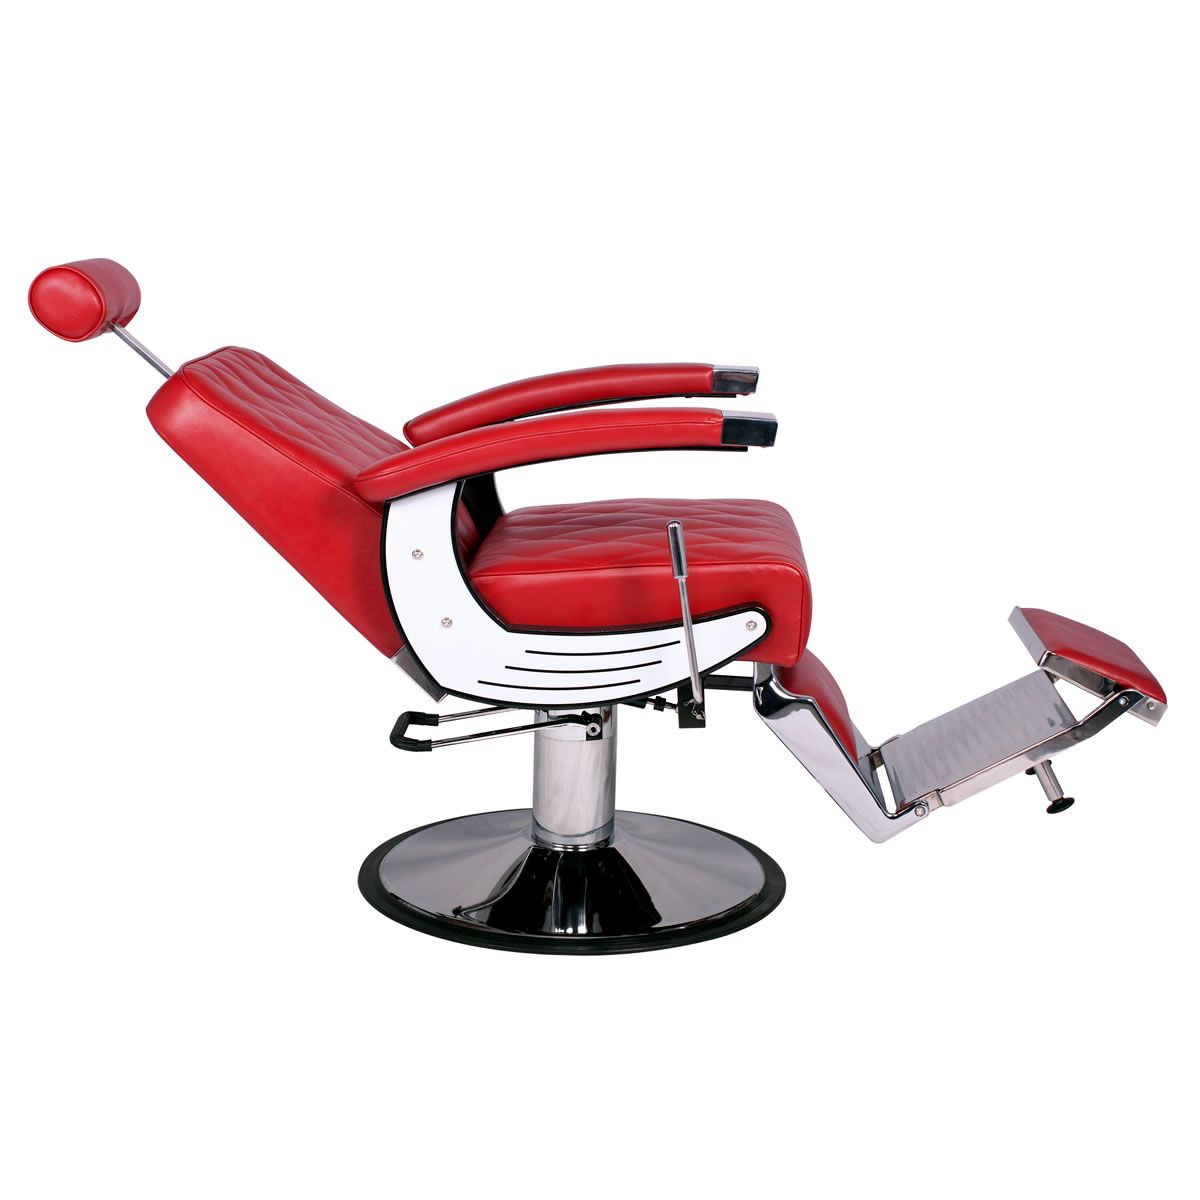 BARON Barber Chair